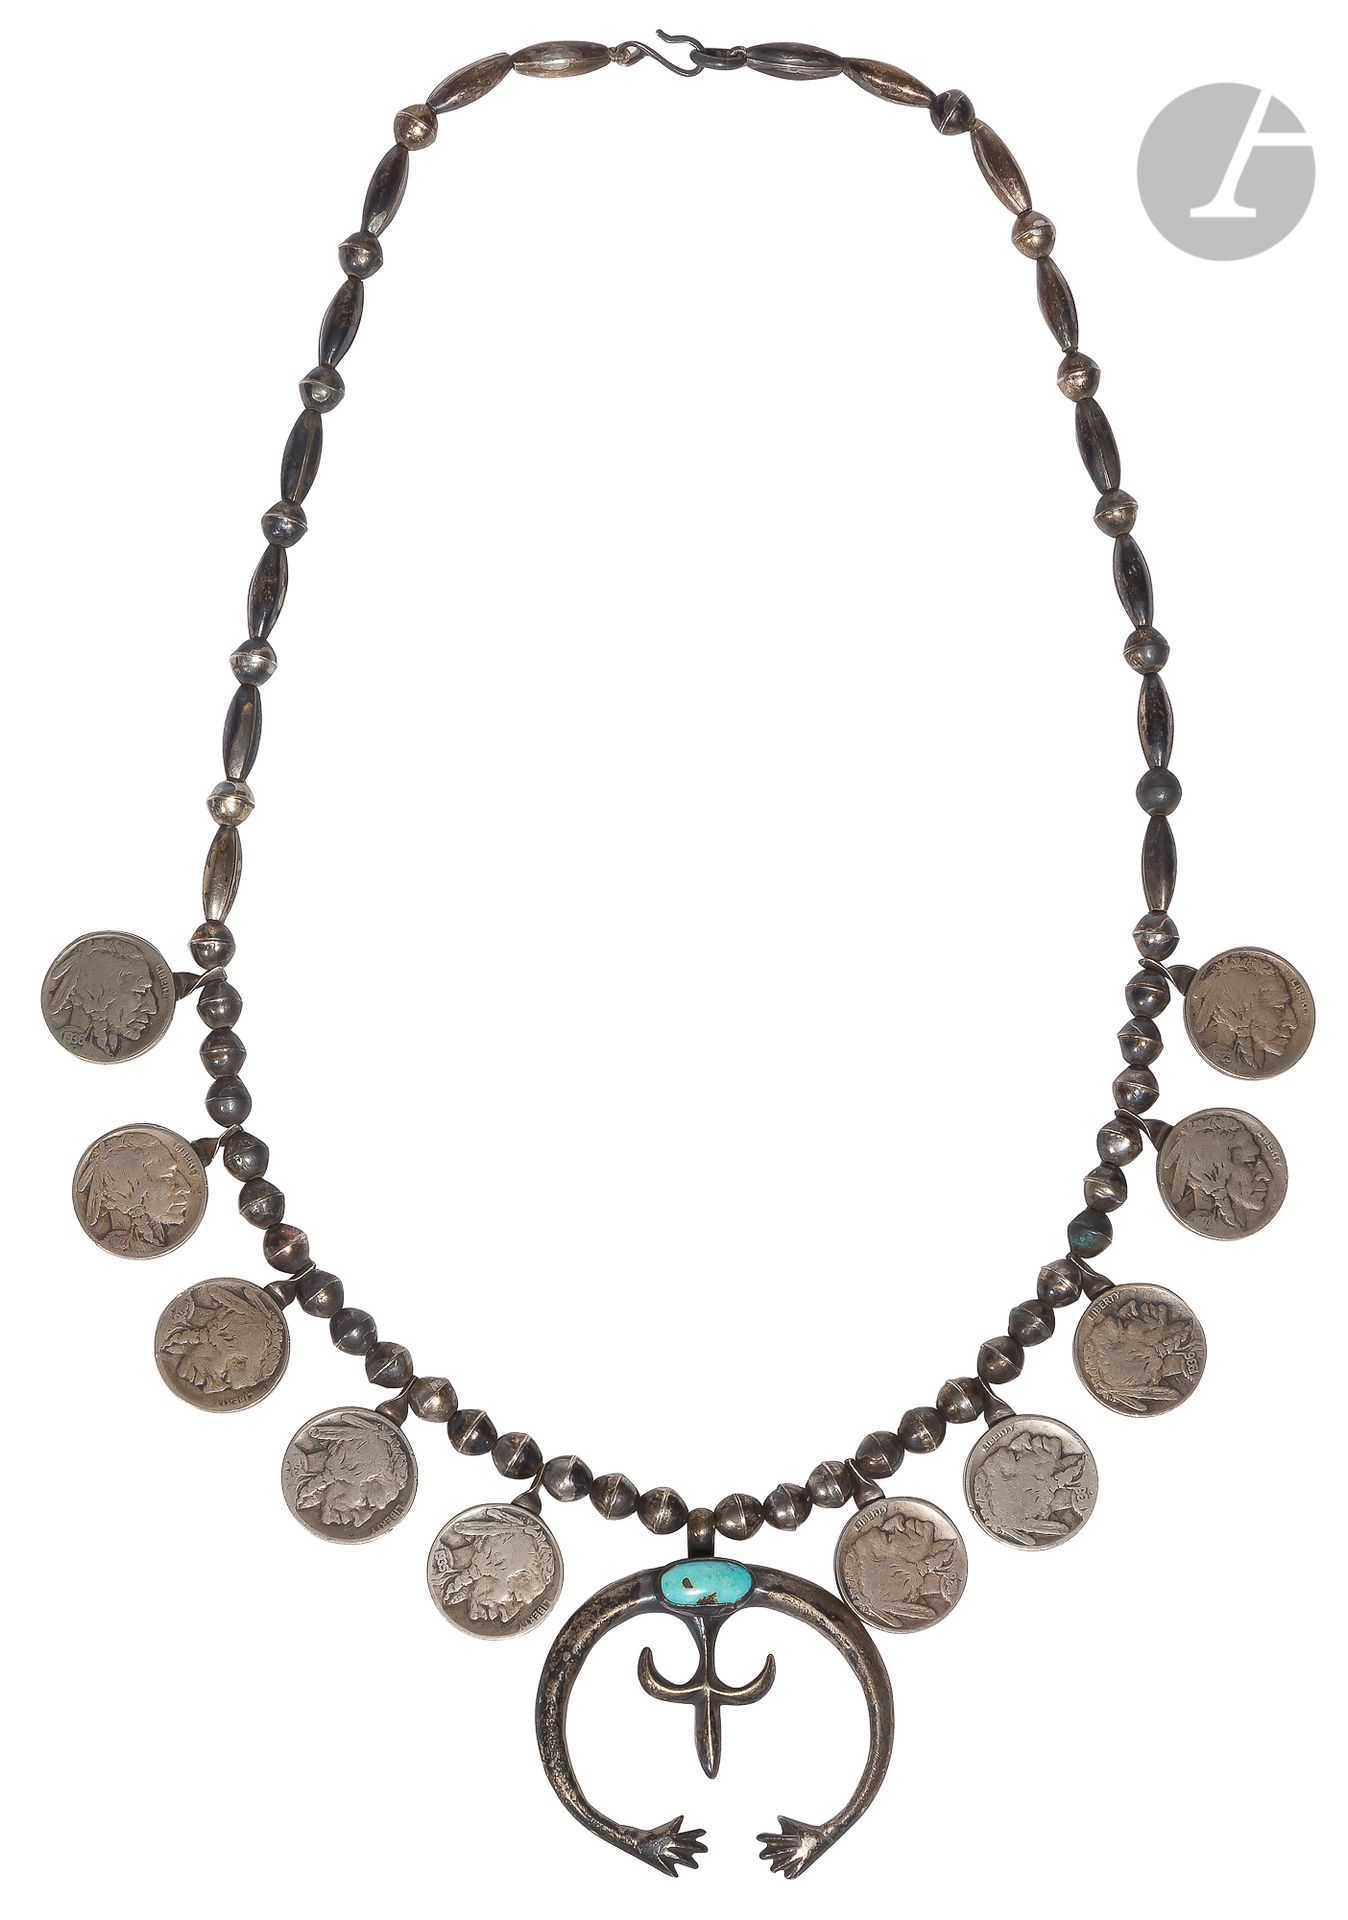 Null 印度项链。
由圆形和椭圆形的银珠组成。饰有绿松石图案，镶有10枚镍币（日期为1923,1927,1928,1935,1936,1938），正面为印第安&hellip;